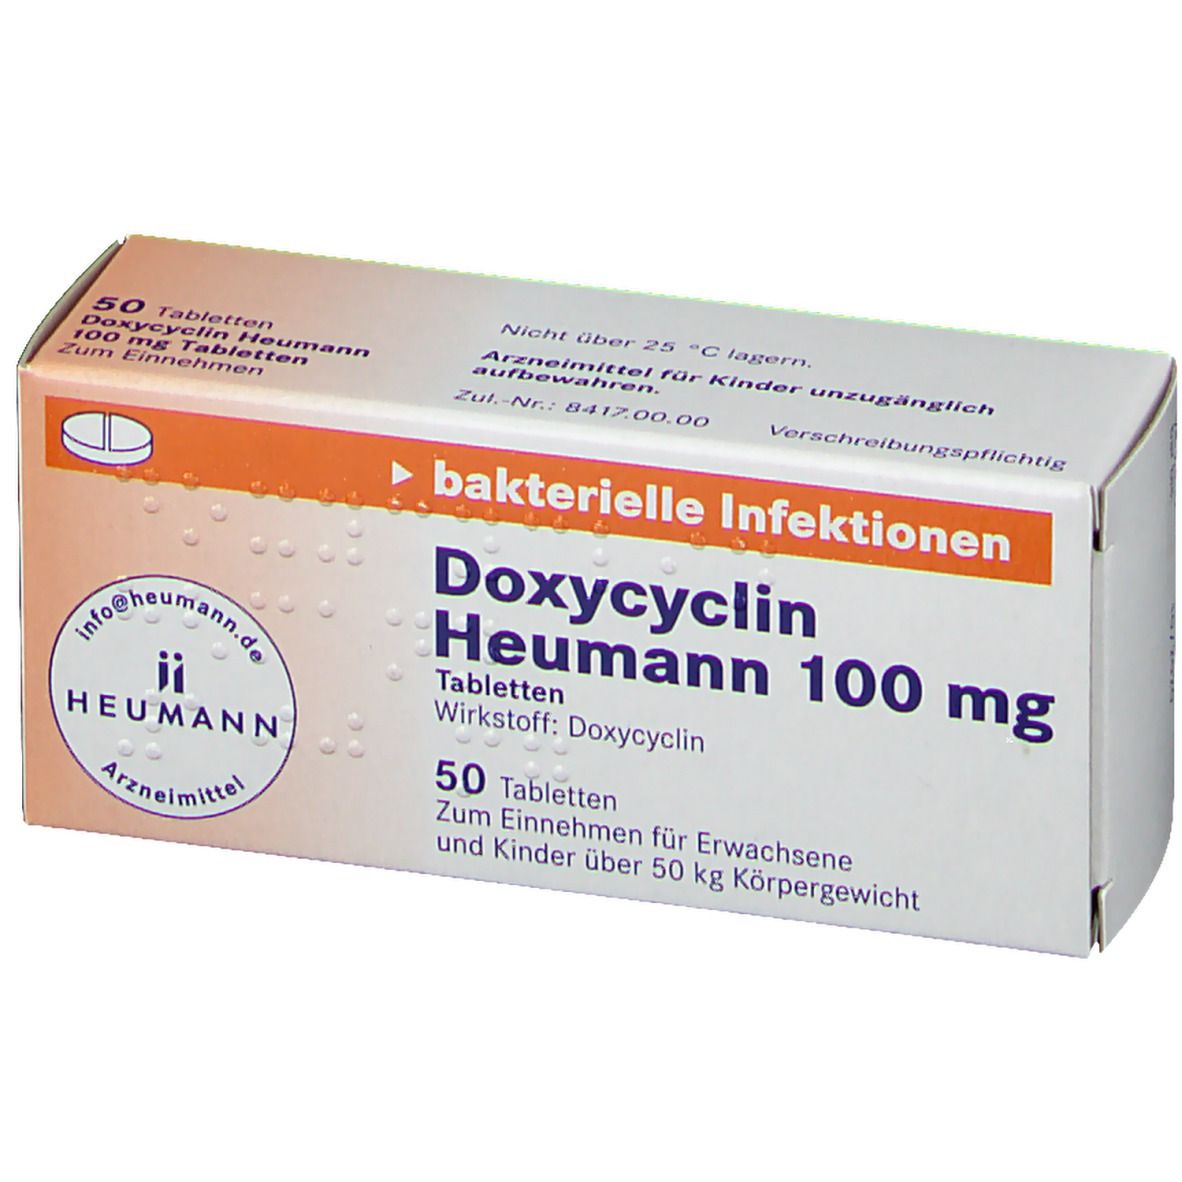 Doxycyclin Heumann 100 mg